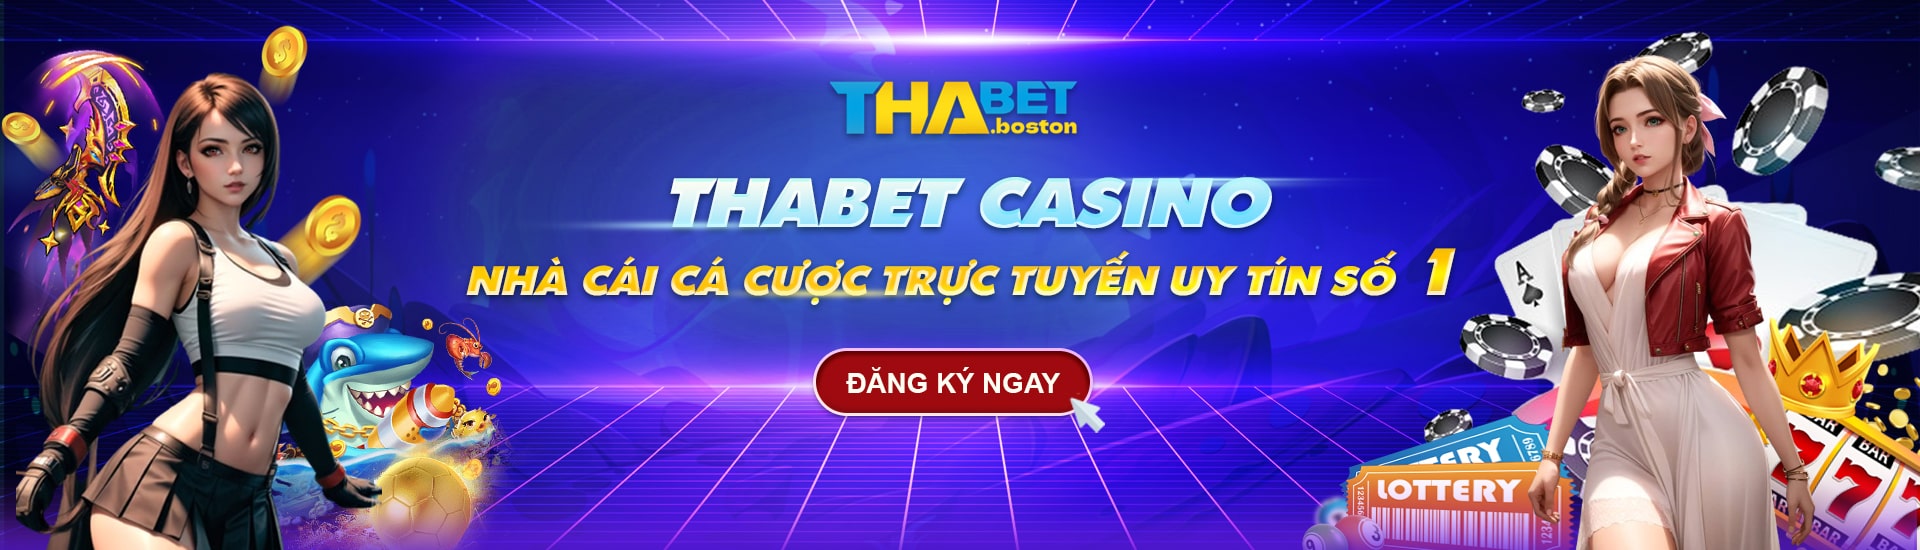 Nhà Cái Thabet Casino - Tha Bet